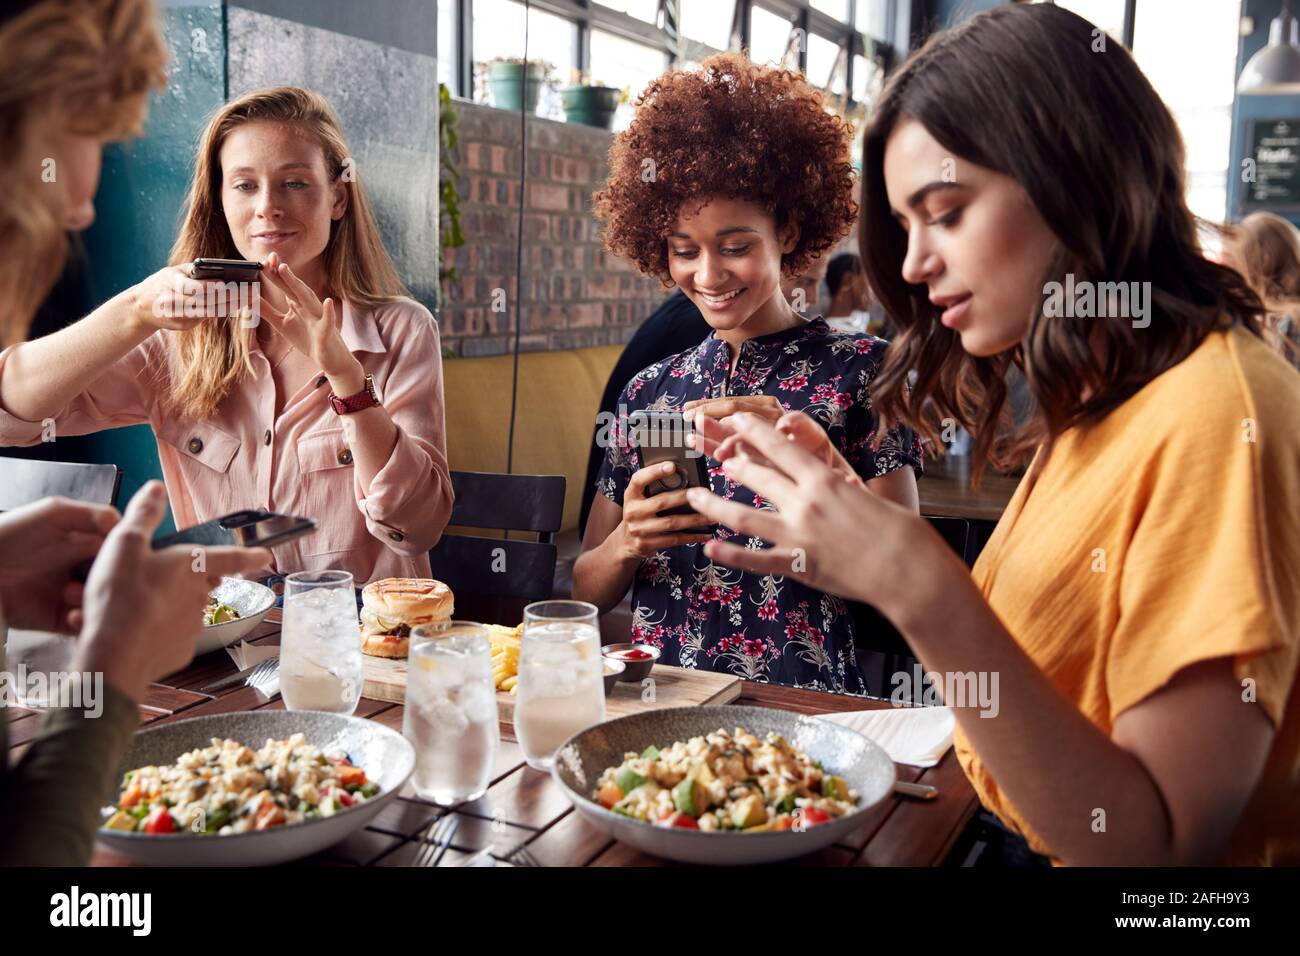 Weibliche Freunde im Restaurant unter Bild von Essen im Restaurant Zur Post auf Social Media Stockfoto